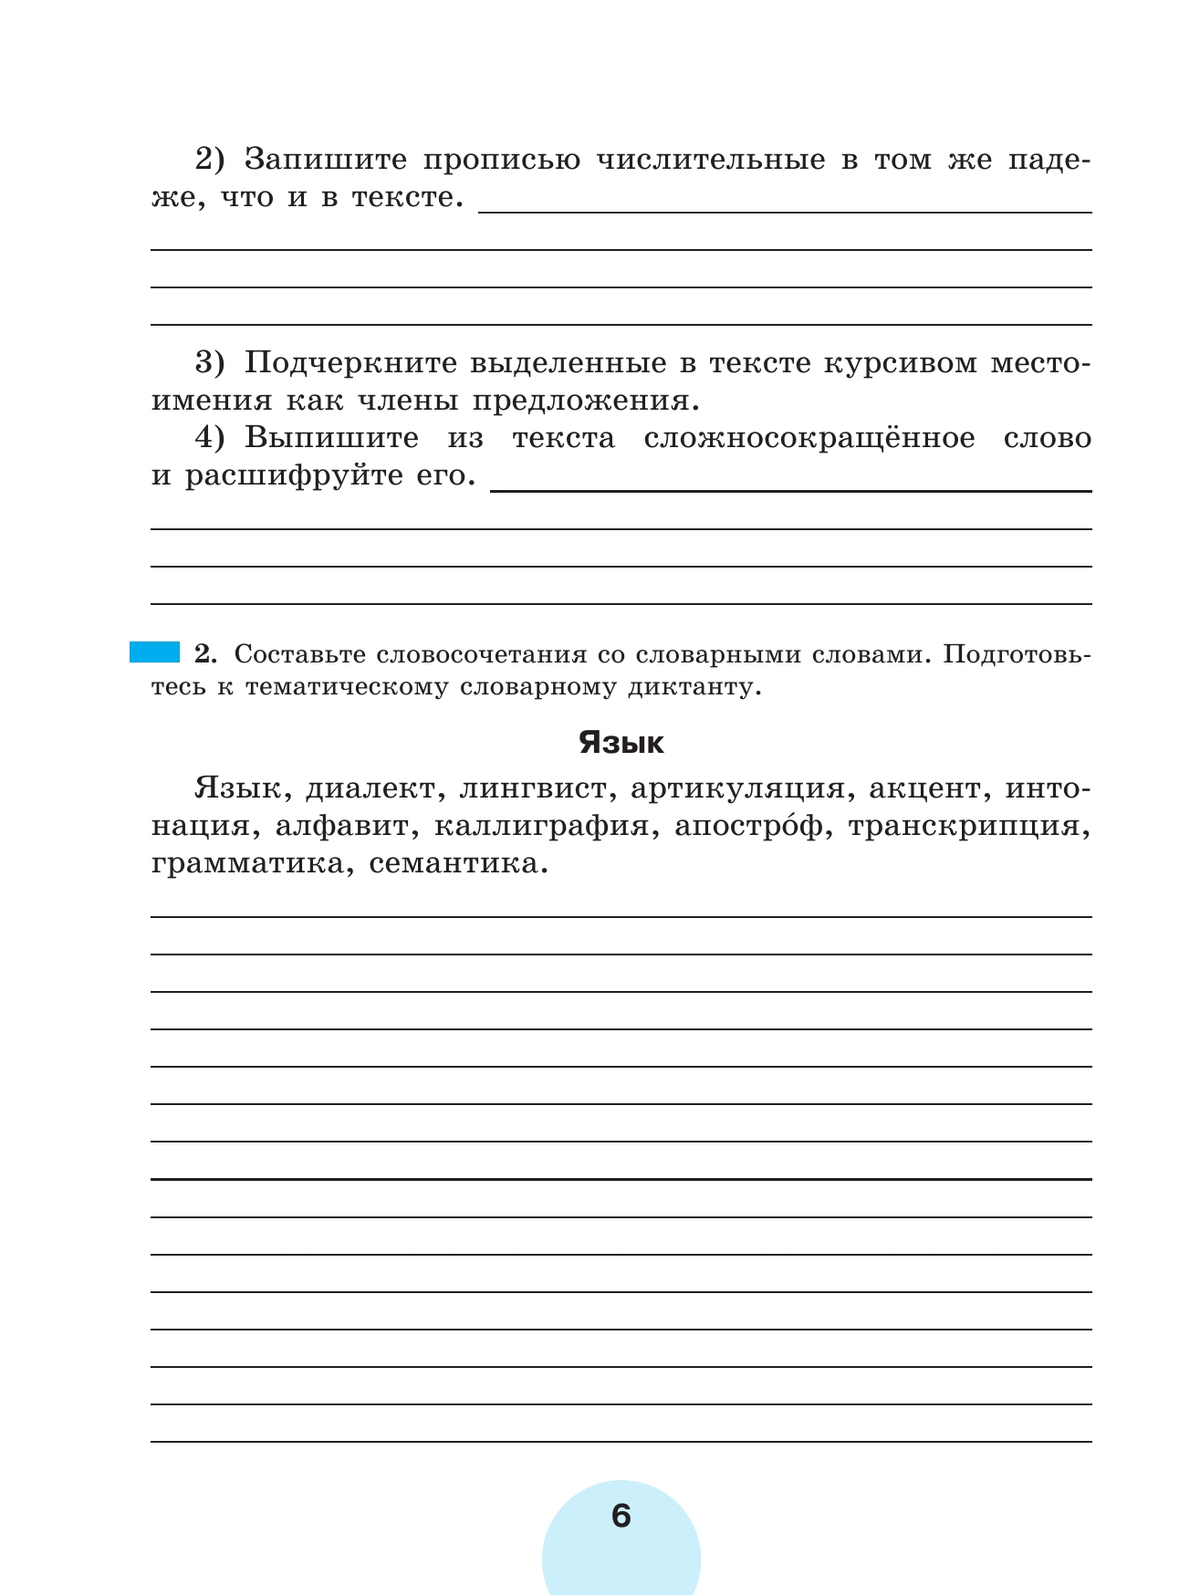 Русский язык. Рабочая тетрадь. 7 класс. В 2 ч. Часть 1 8